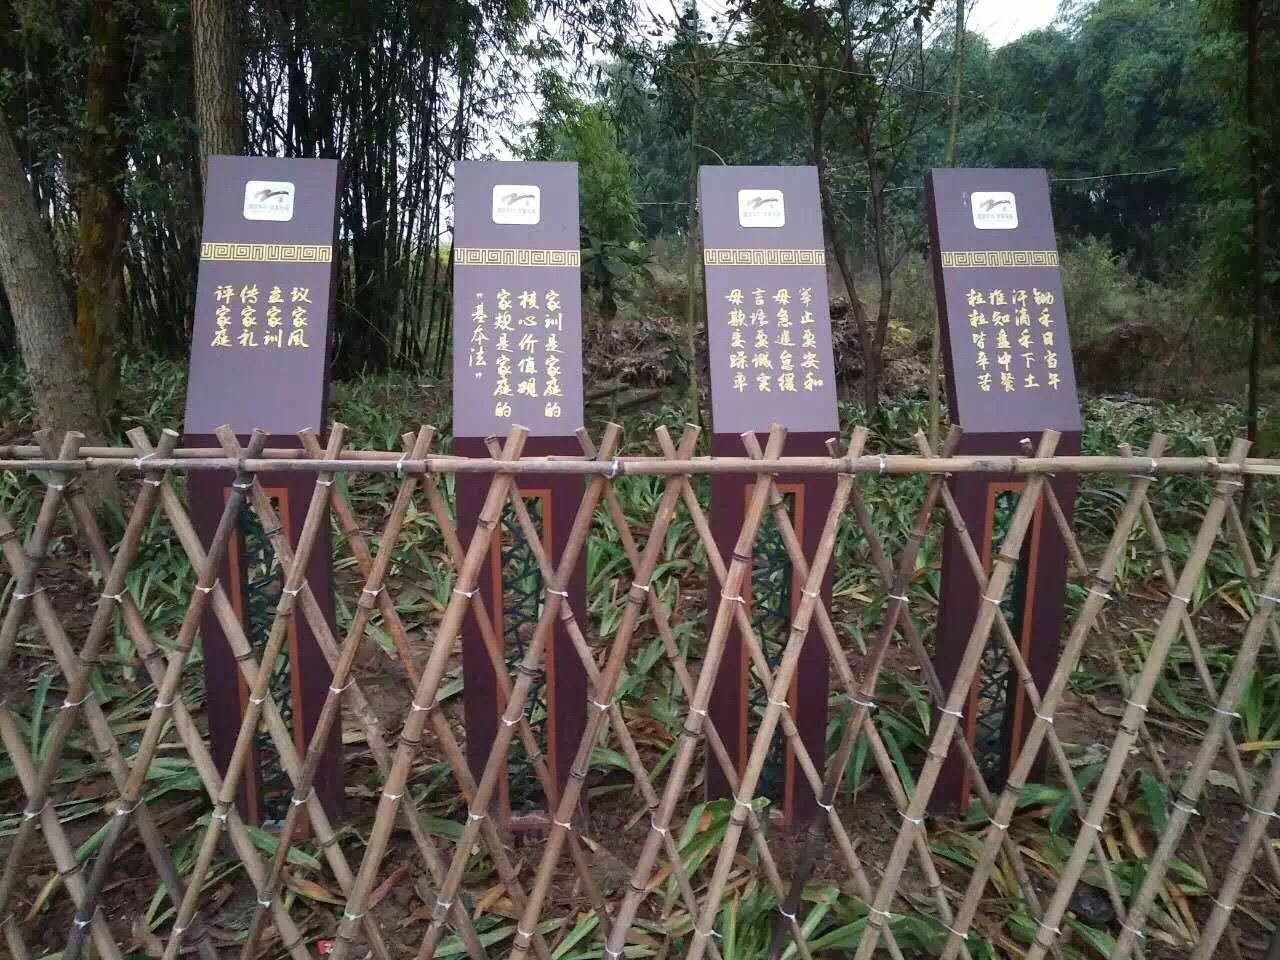 重庆西彭镇真武宫村标识导视系统落地安装完毕